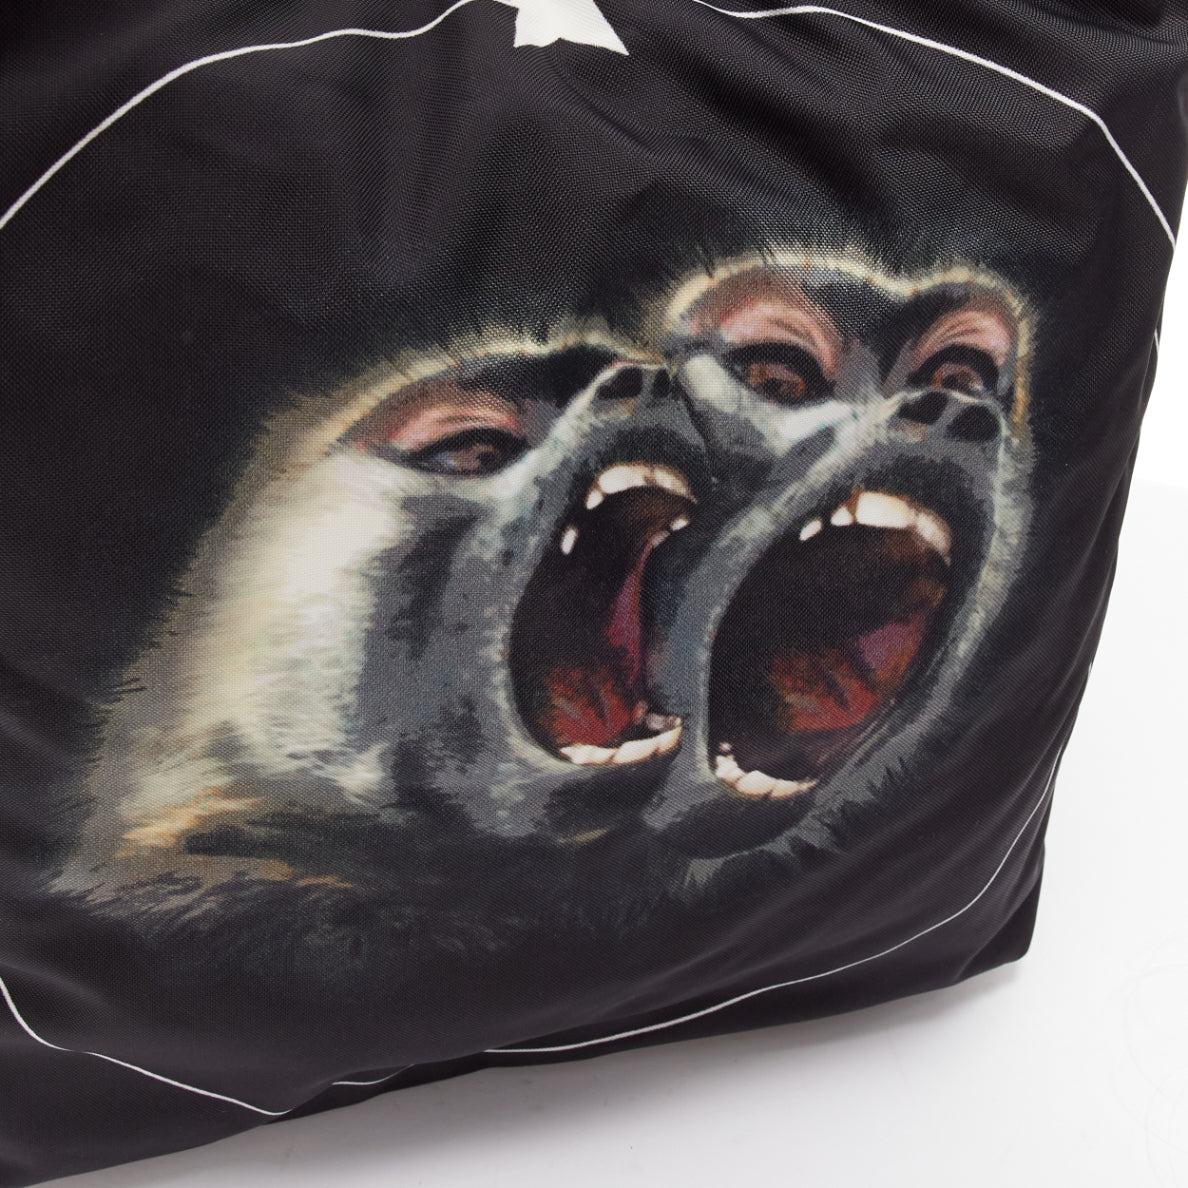 GIVENCHY Riccardo Tisci Monkey Brothers Nightingale nylon leather shoulder bag For Sale 3